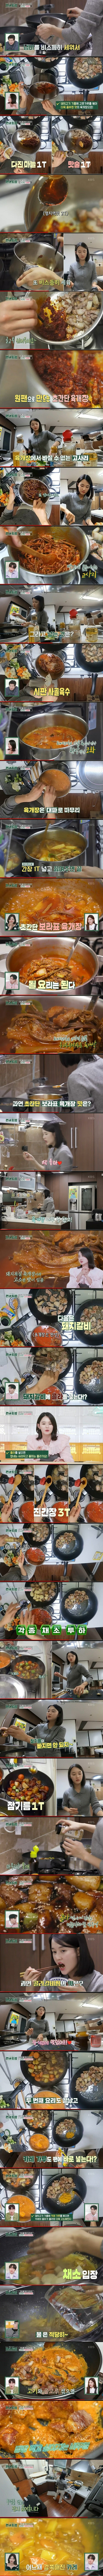 동생만 12명인 배우 남보라의 요리실력